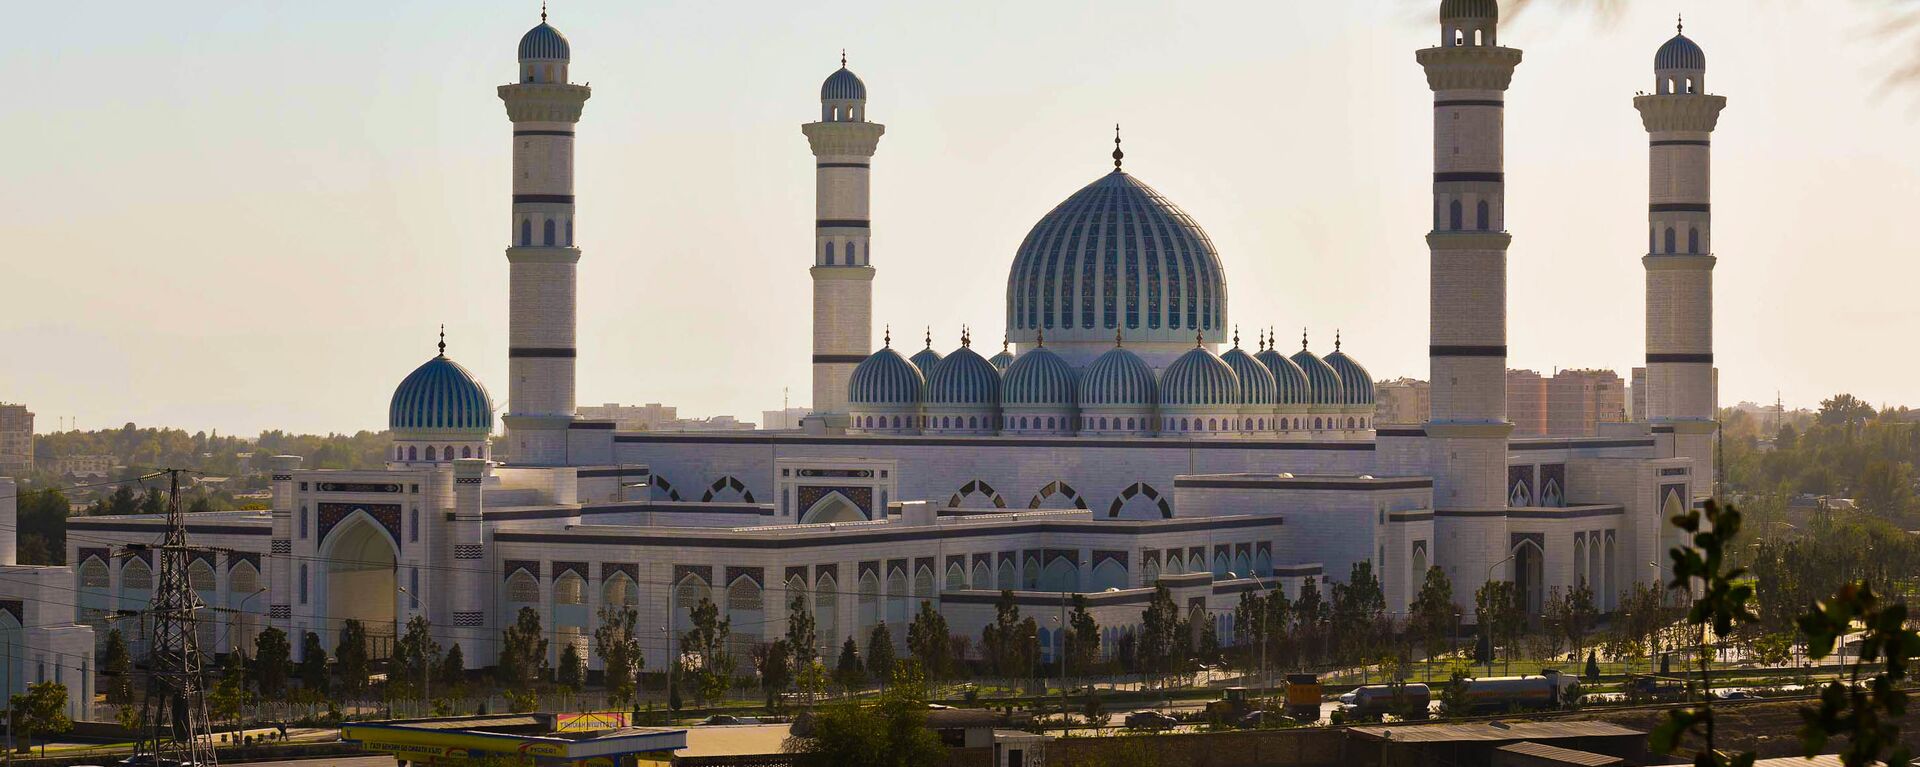 Новая мечеть в Душанбе - Sputnik Таджикистан, 1920, 10.02.2021